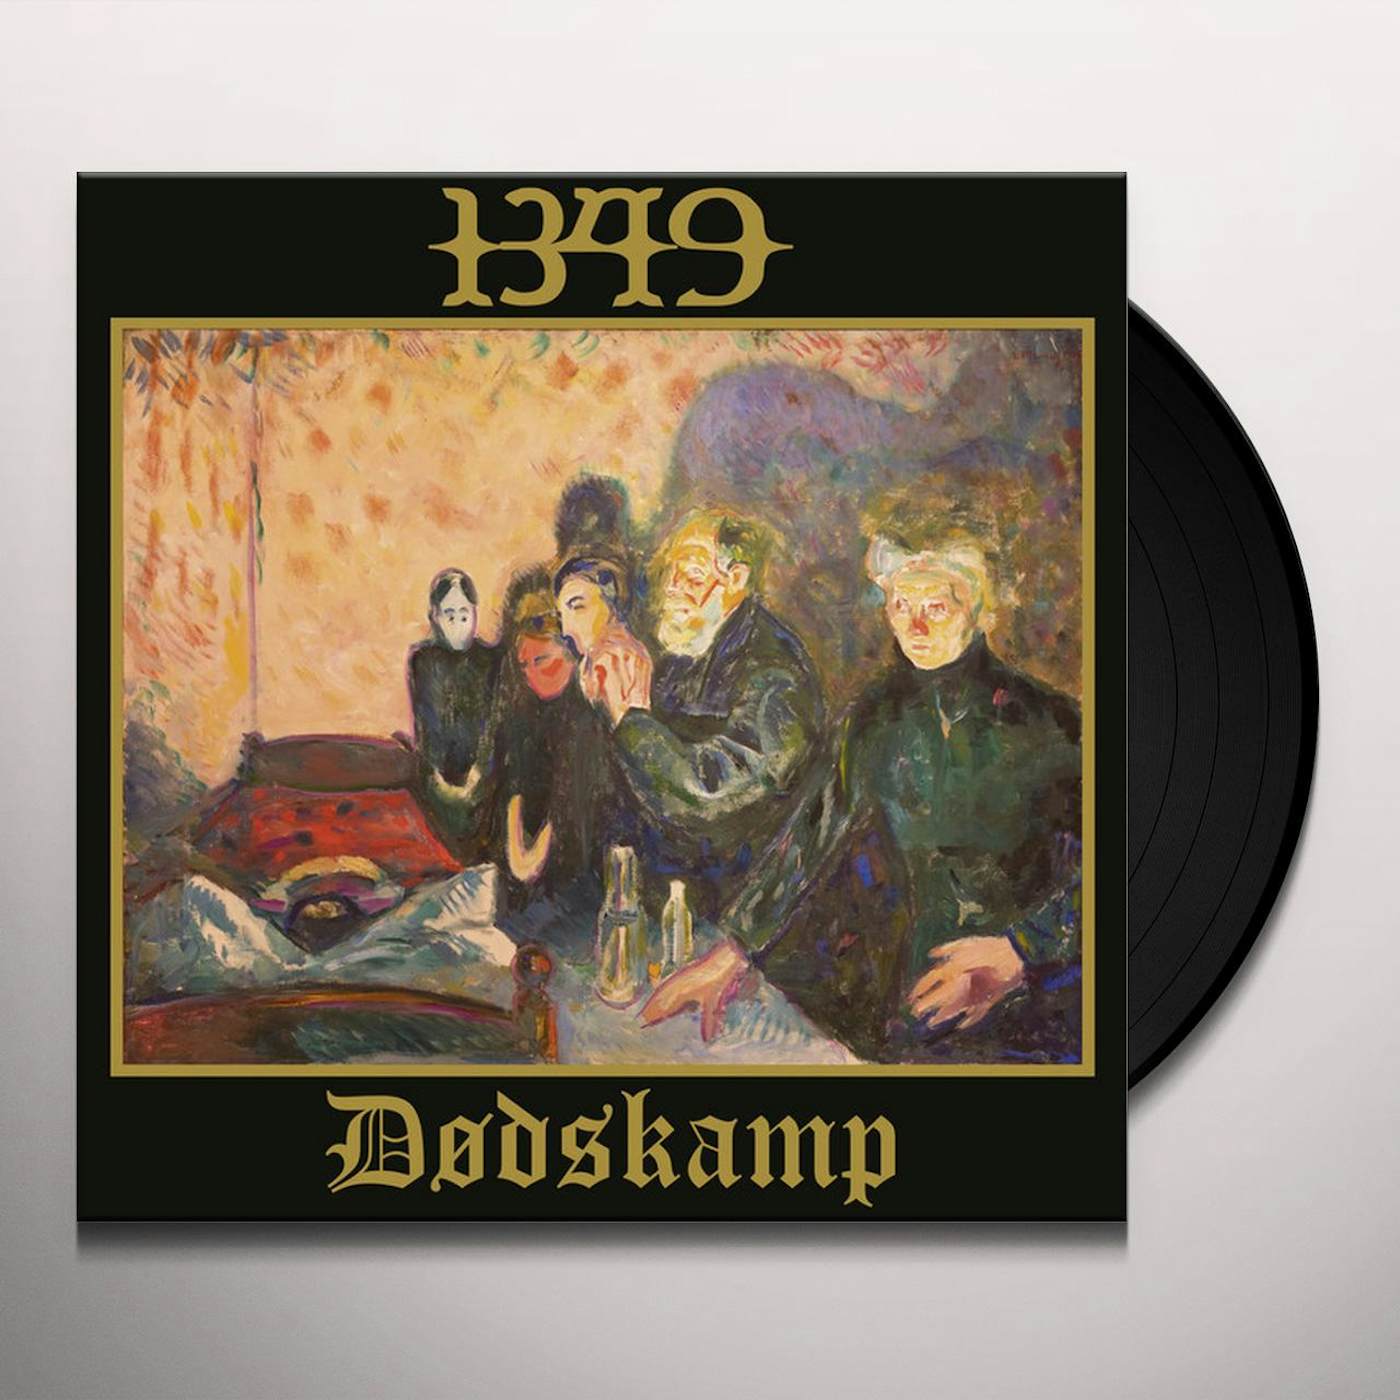 1349 DODSKAMP Vinyl Record